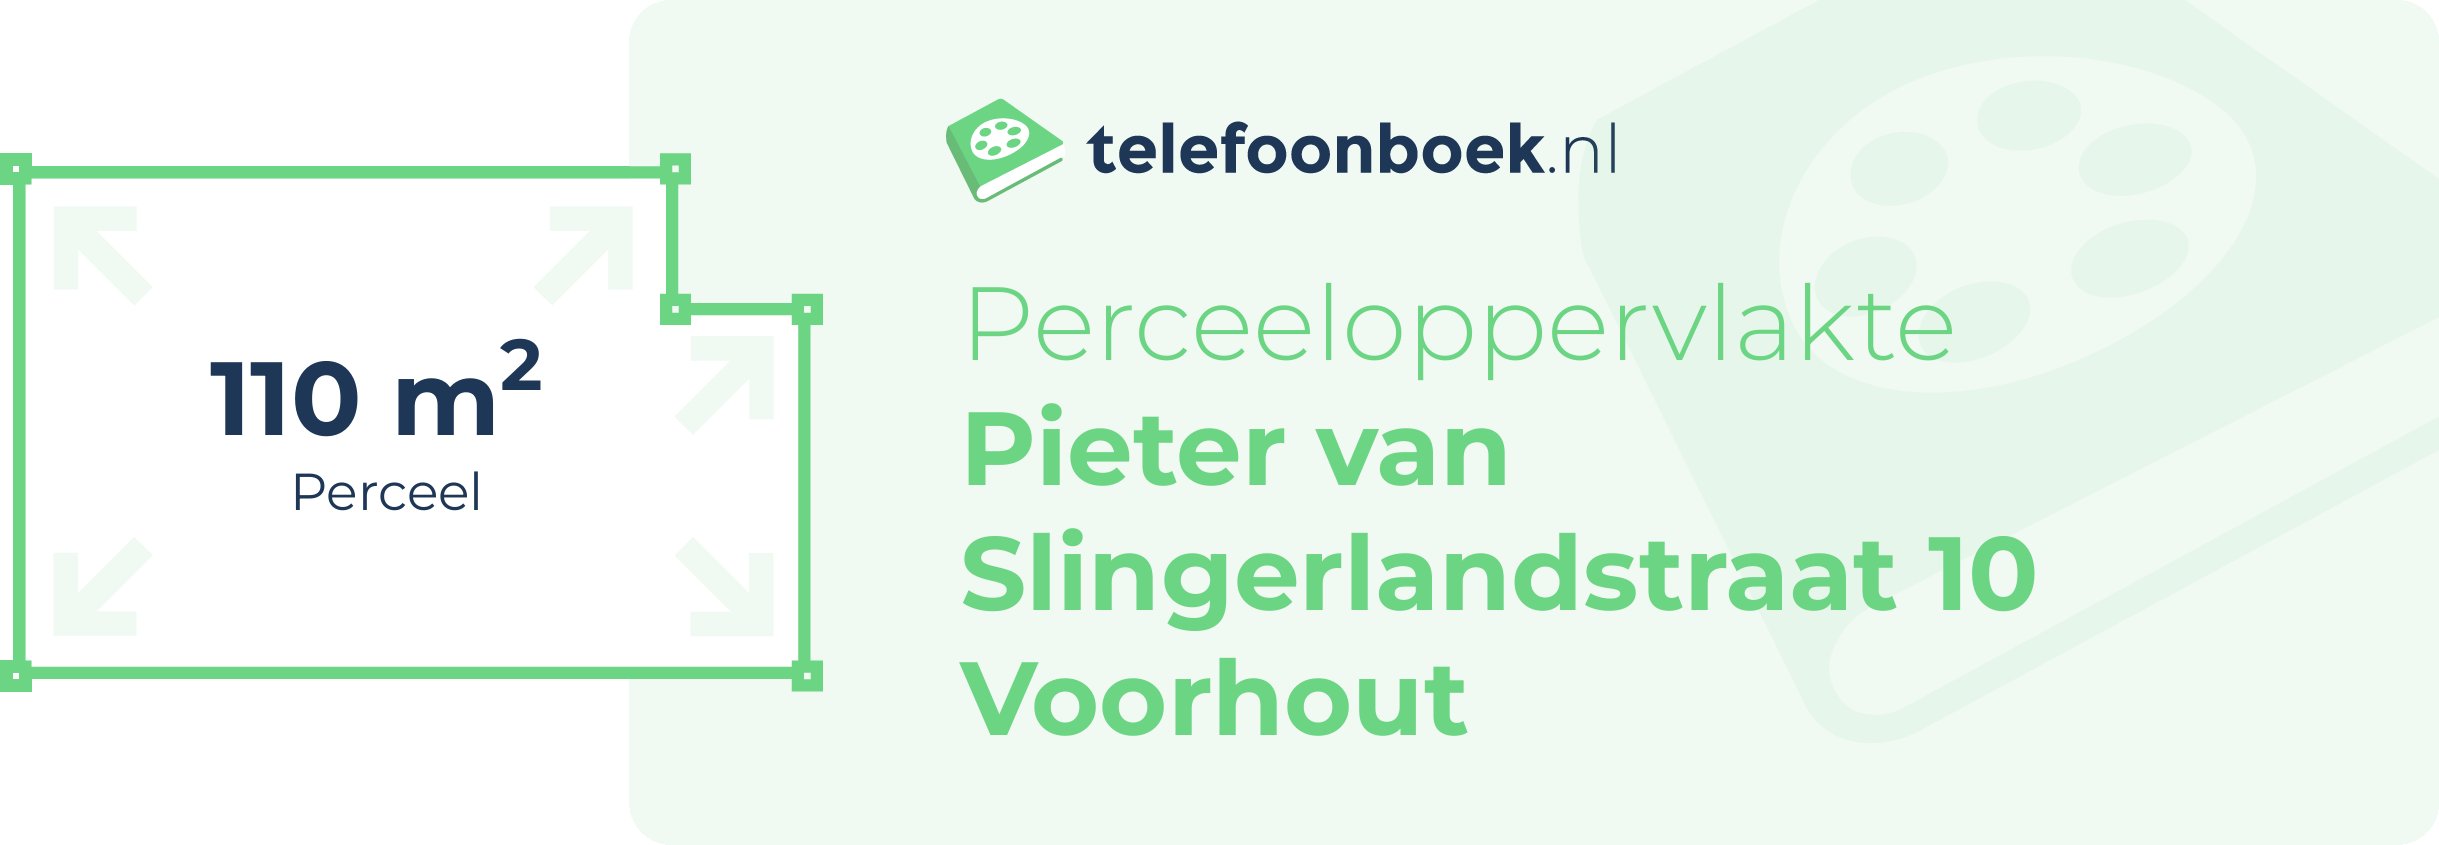 Perceeloppervlakte Pieter Van Slingerlandstraat 10 Voorhout